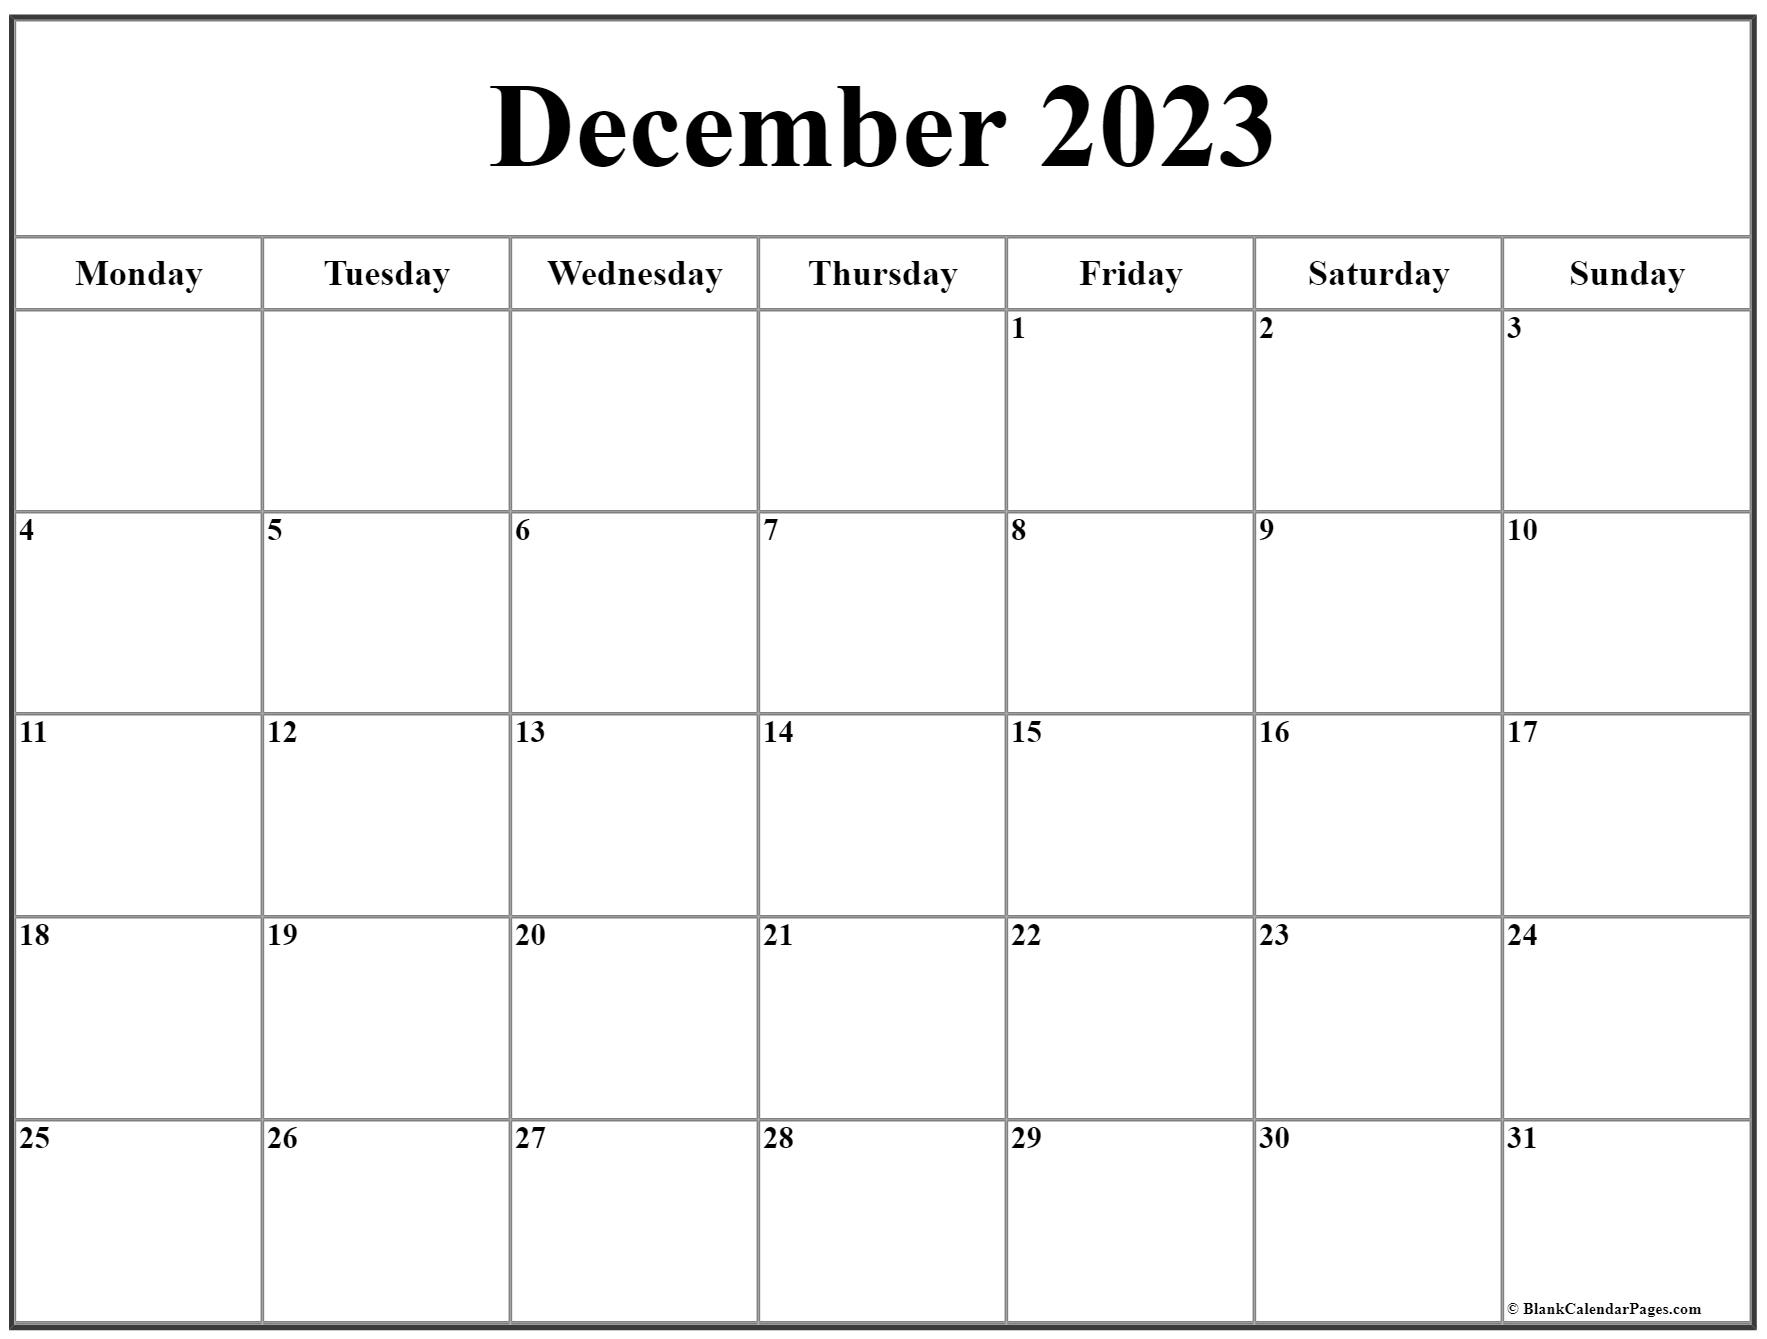 december-2023-calendar-monday-start-get-calendar-2023-update